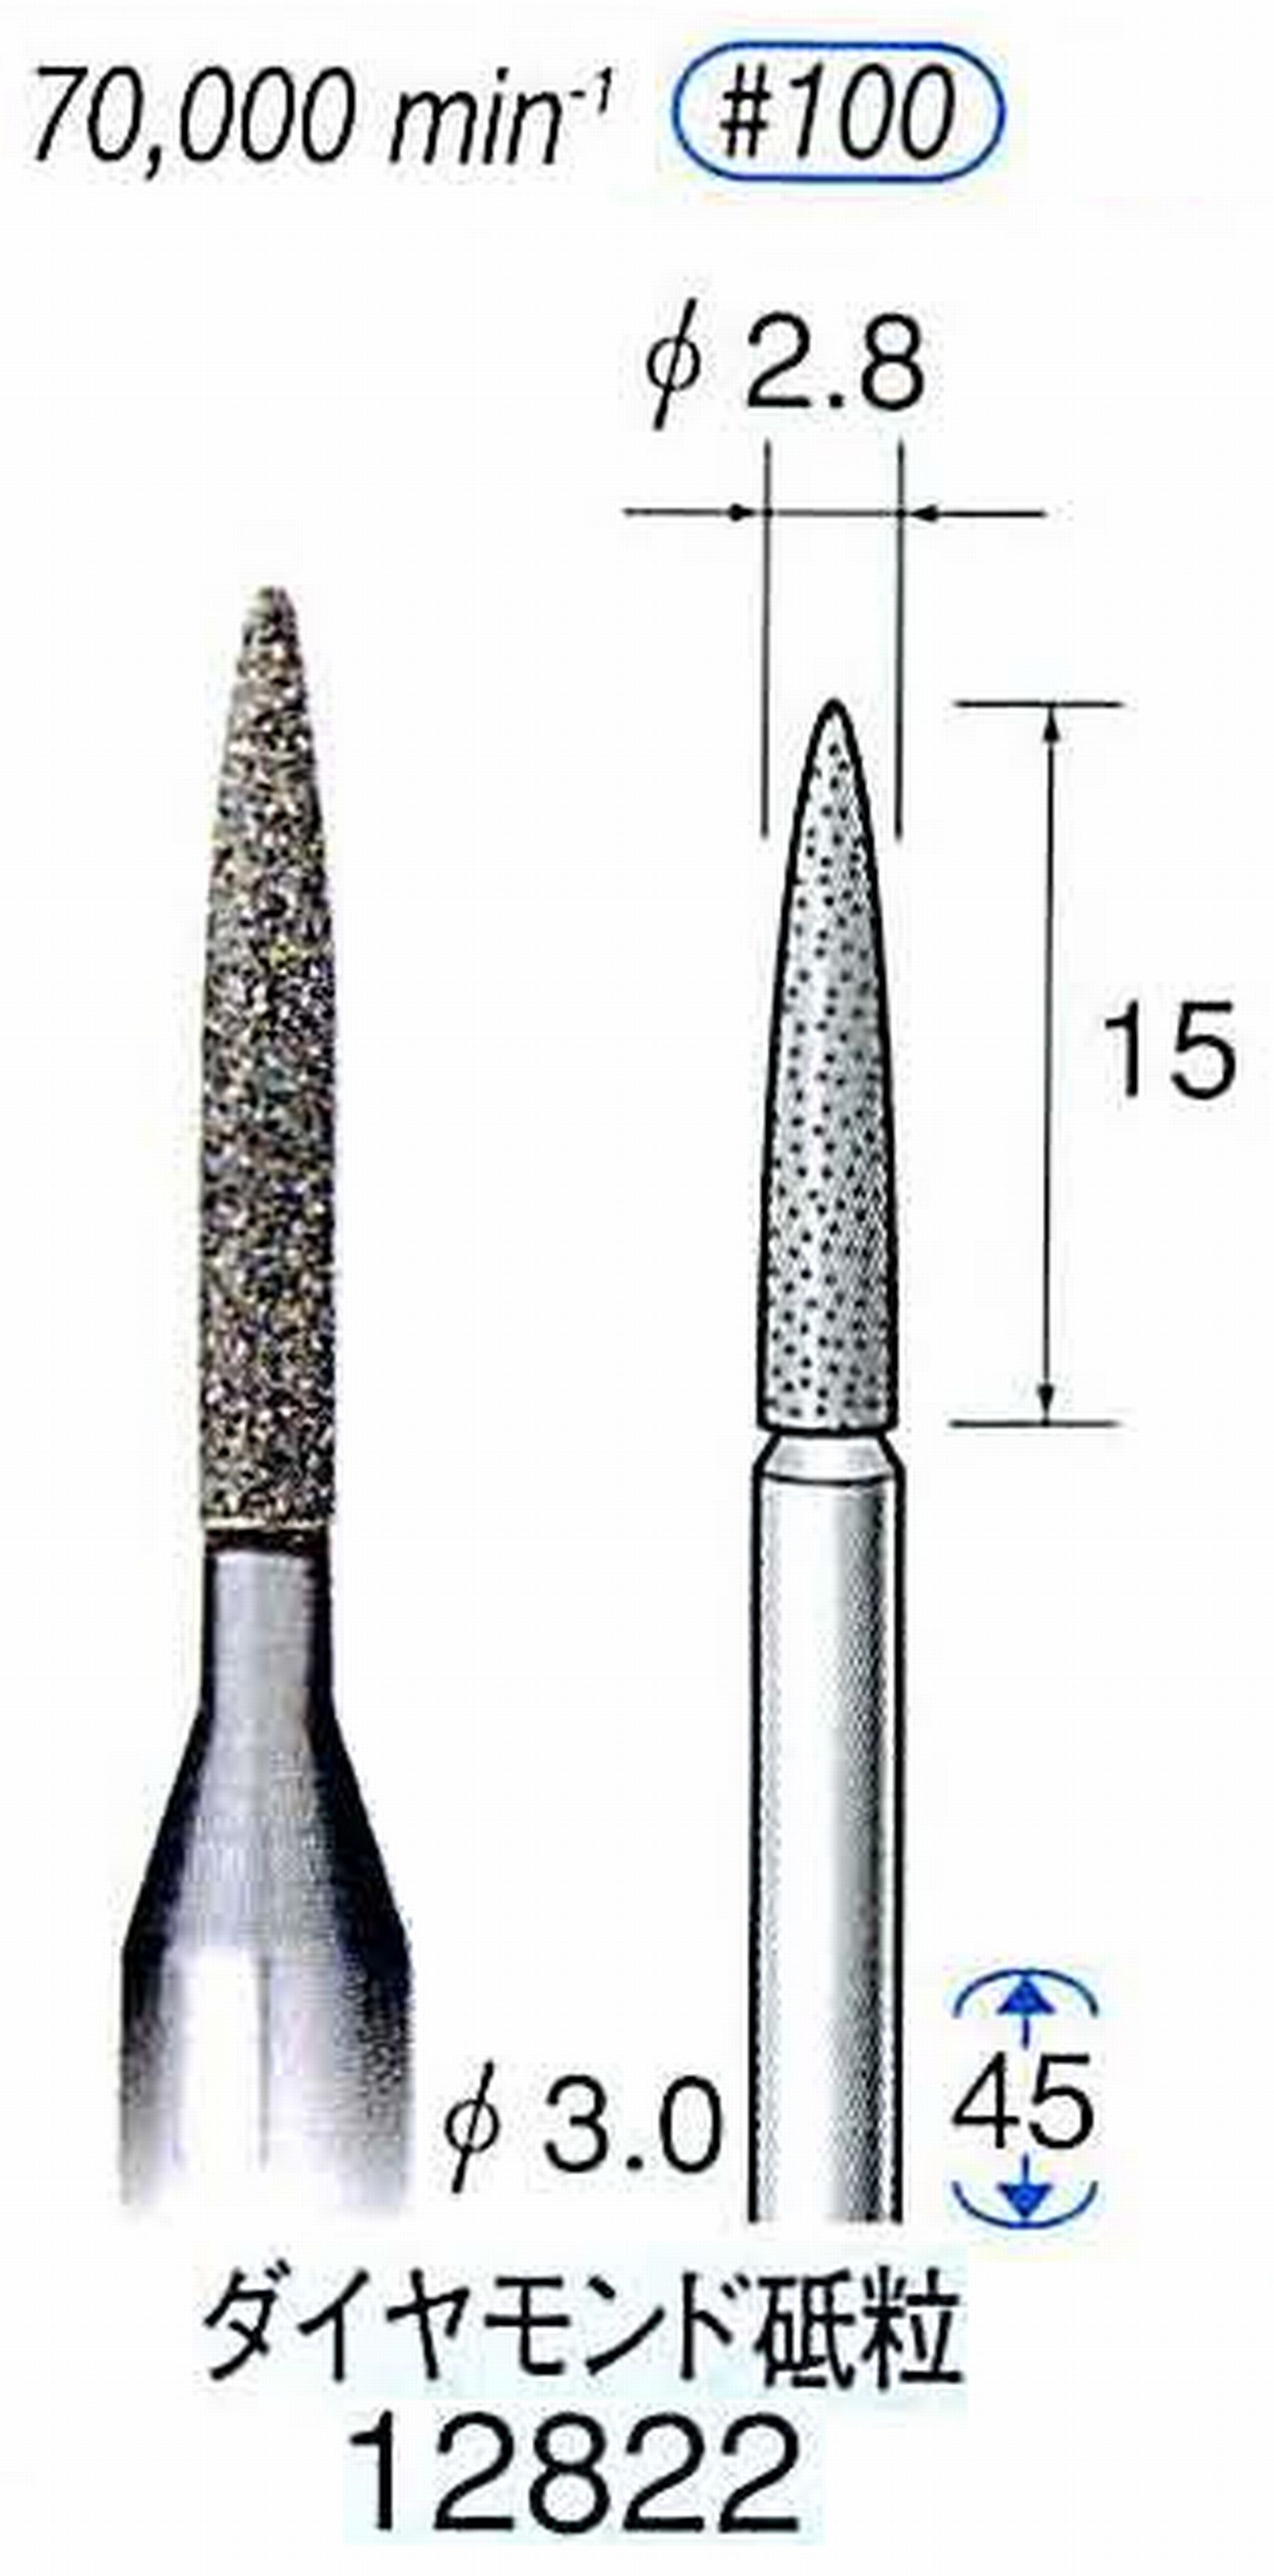 ナカニシ/NAKANISHI クラフト・ホビー用ダイヤモンドバー ダイヤモンド砥粒 軸径(シャンク)φ3.0mm 12822